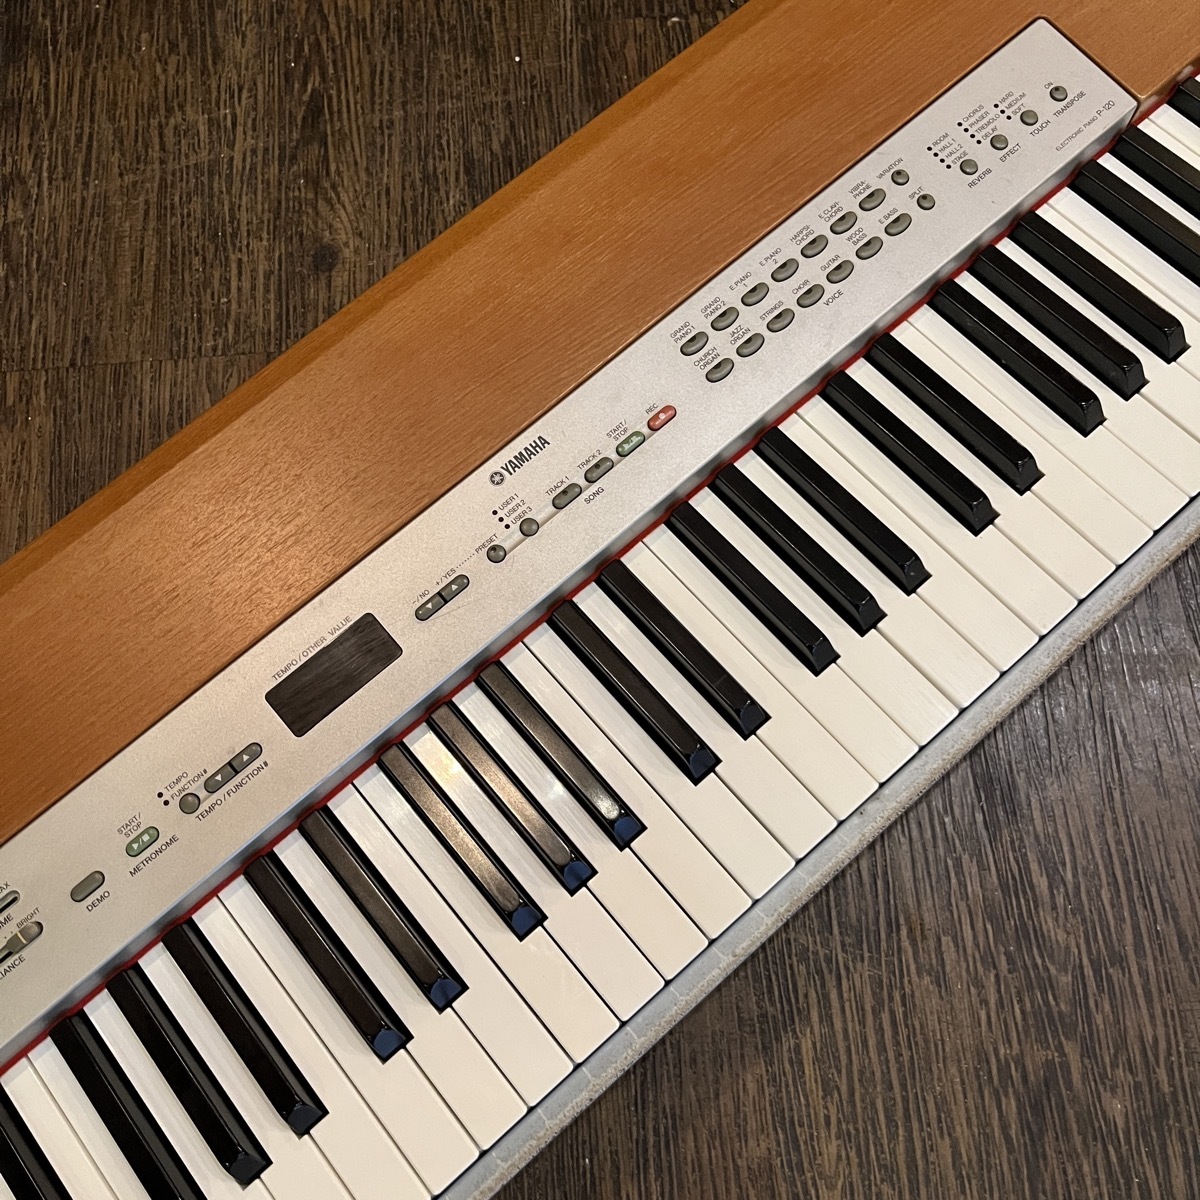 Yamaha P-120 Keyboard Yamaha электронное пианино клавиатура -GrunSound-m395-